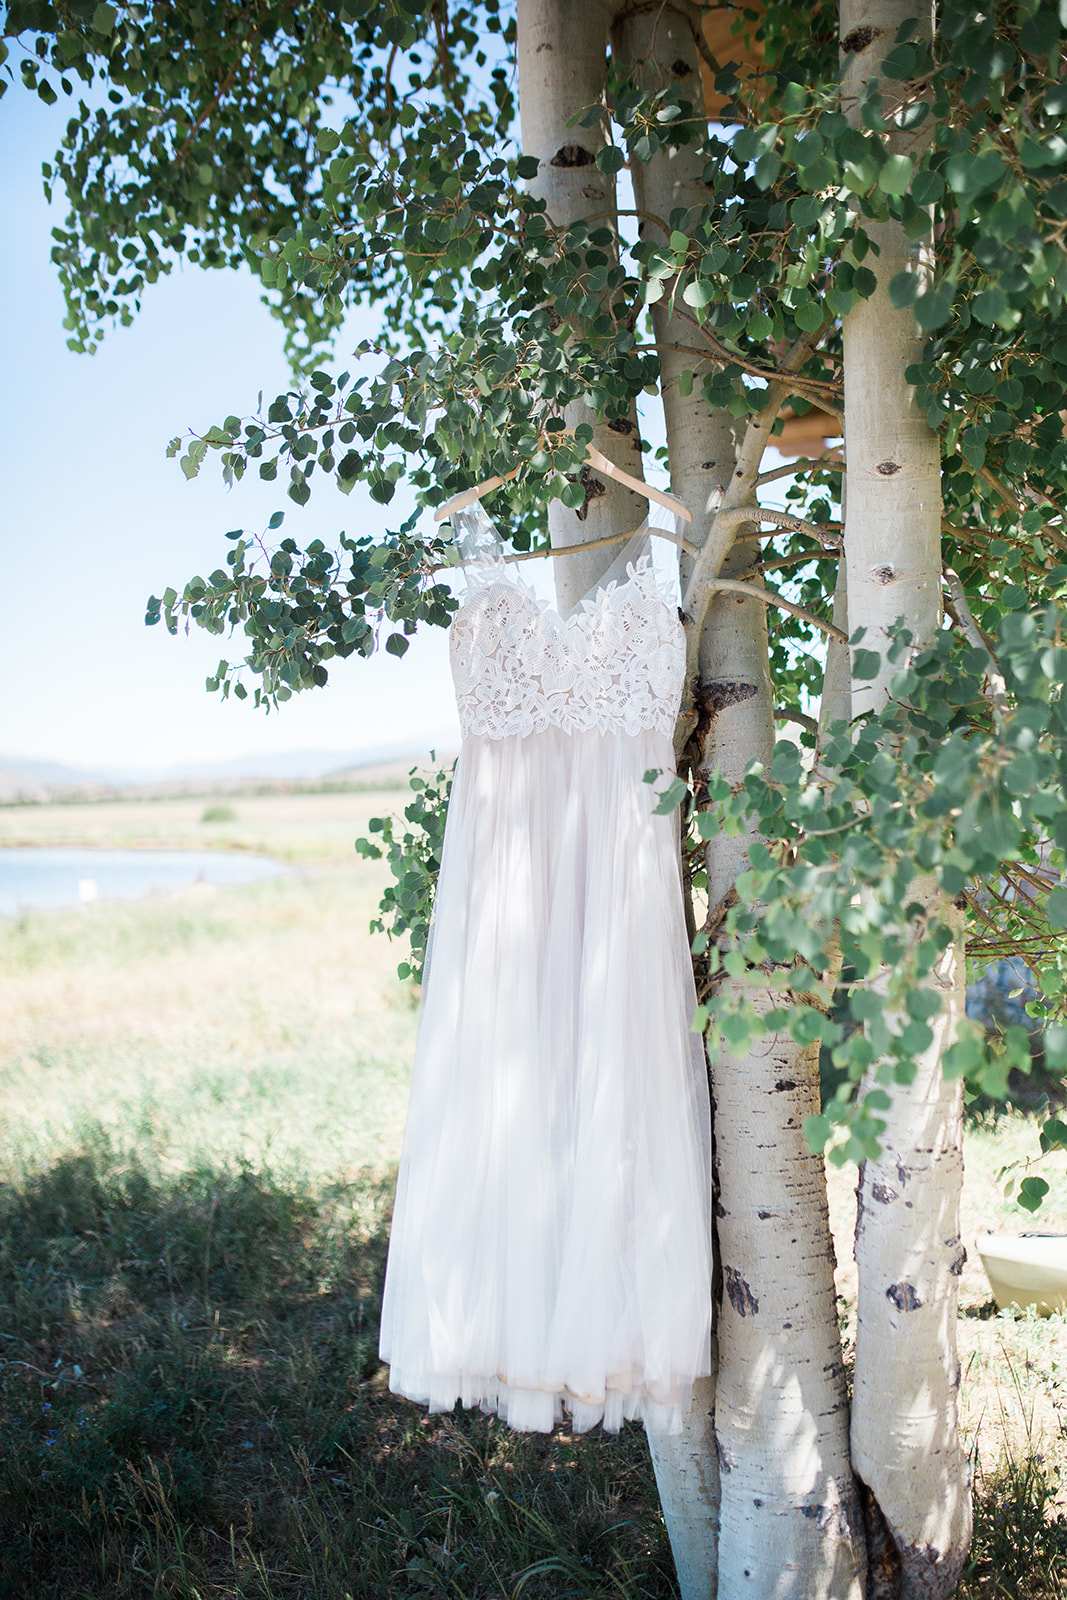 Wedding dress in aspen tree in Colorado mountains